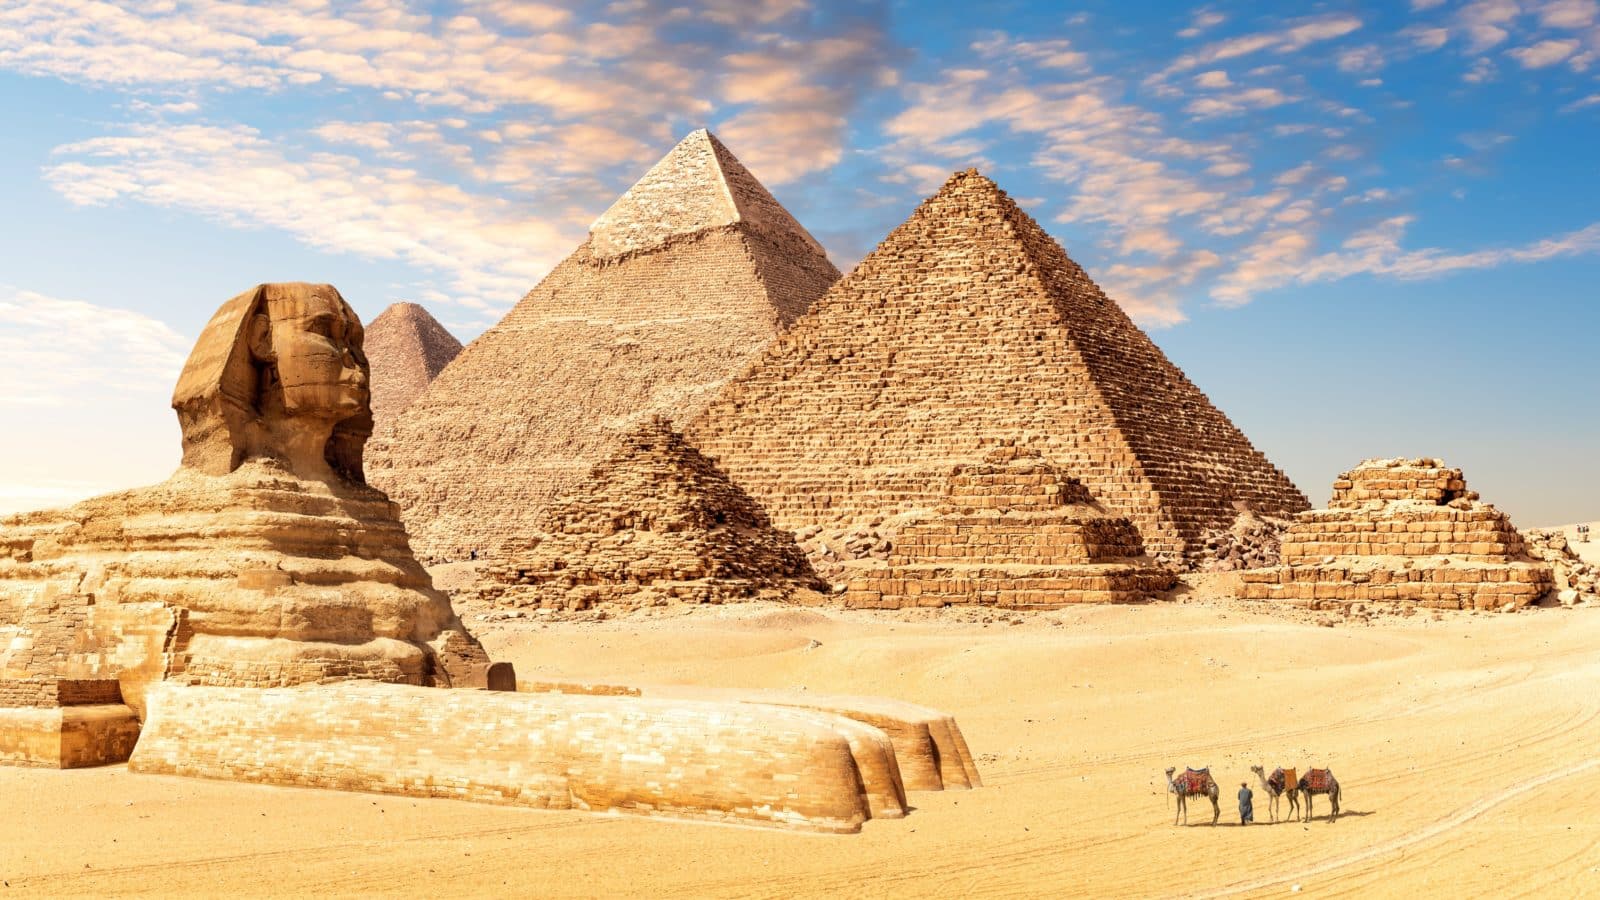 Piramide u Gizi: Top 15 teorija i zanimljivosti